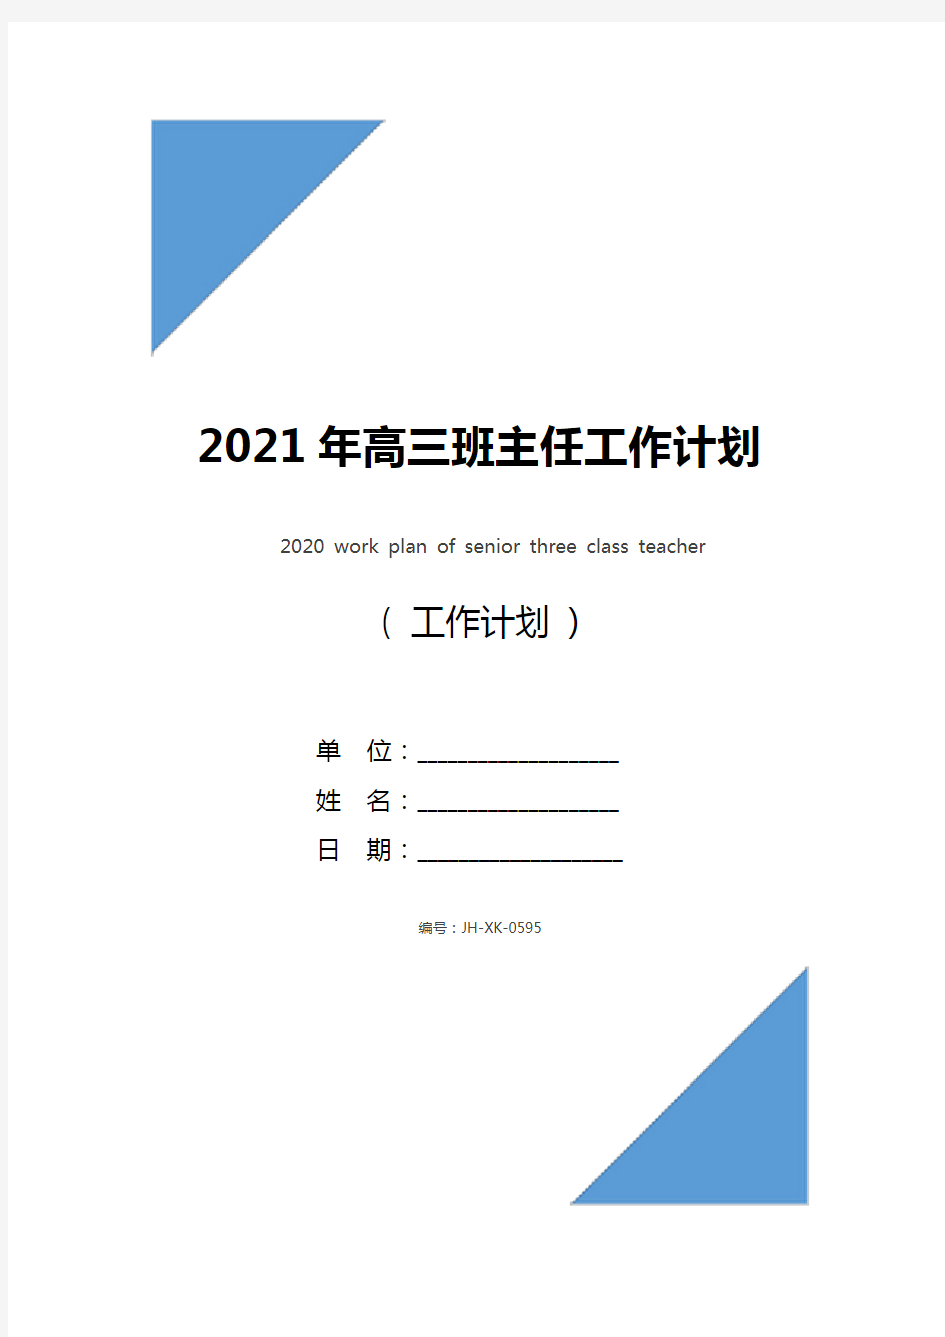 2021年高三班主任工作计划(通用版)